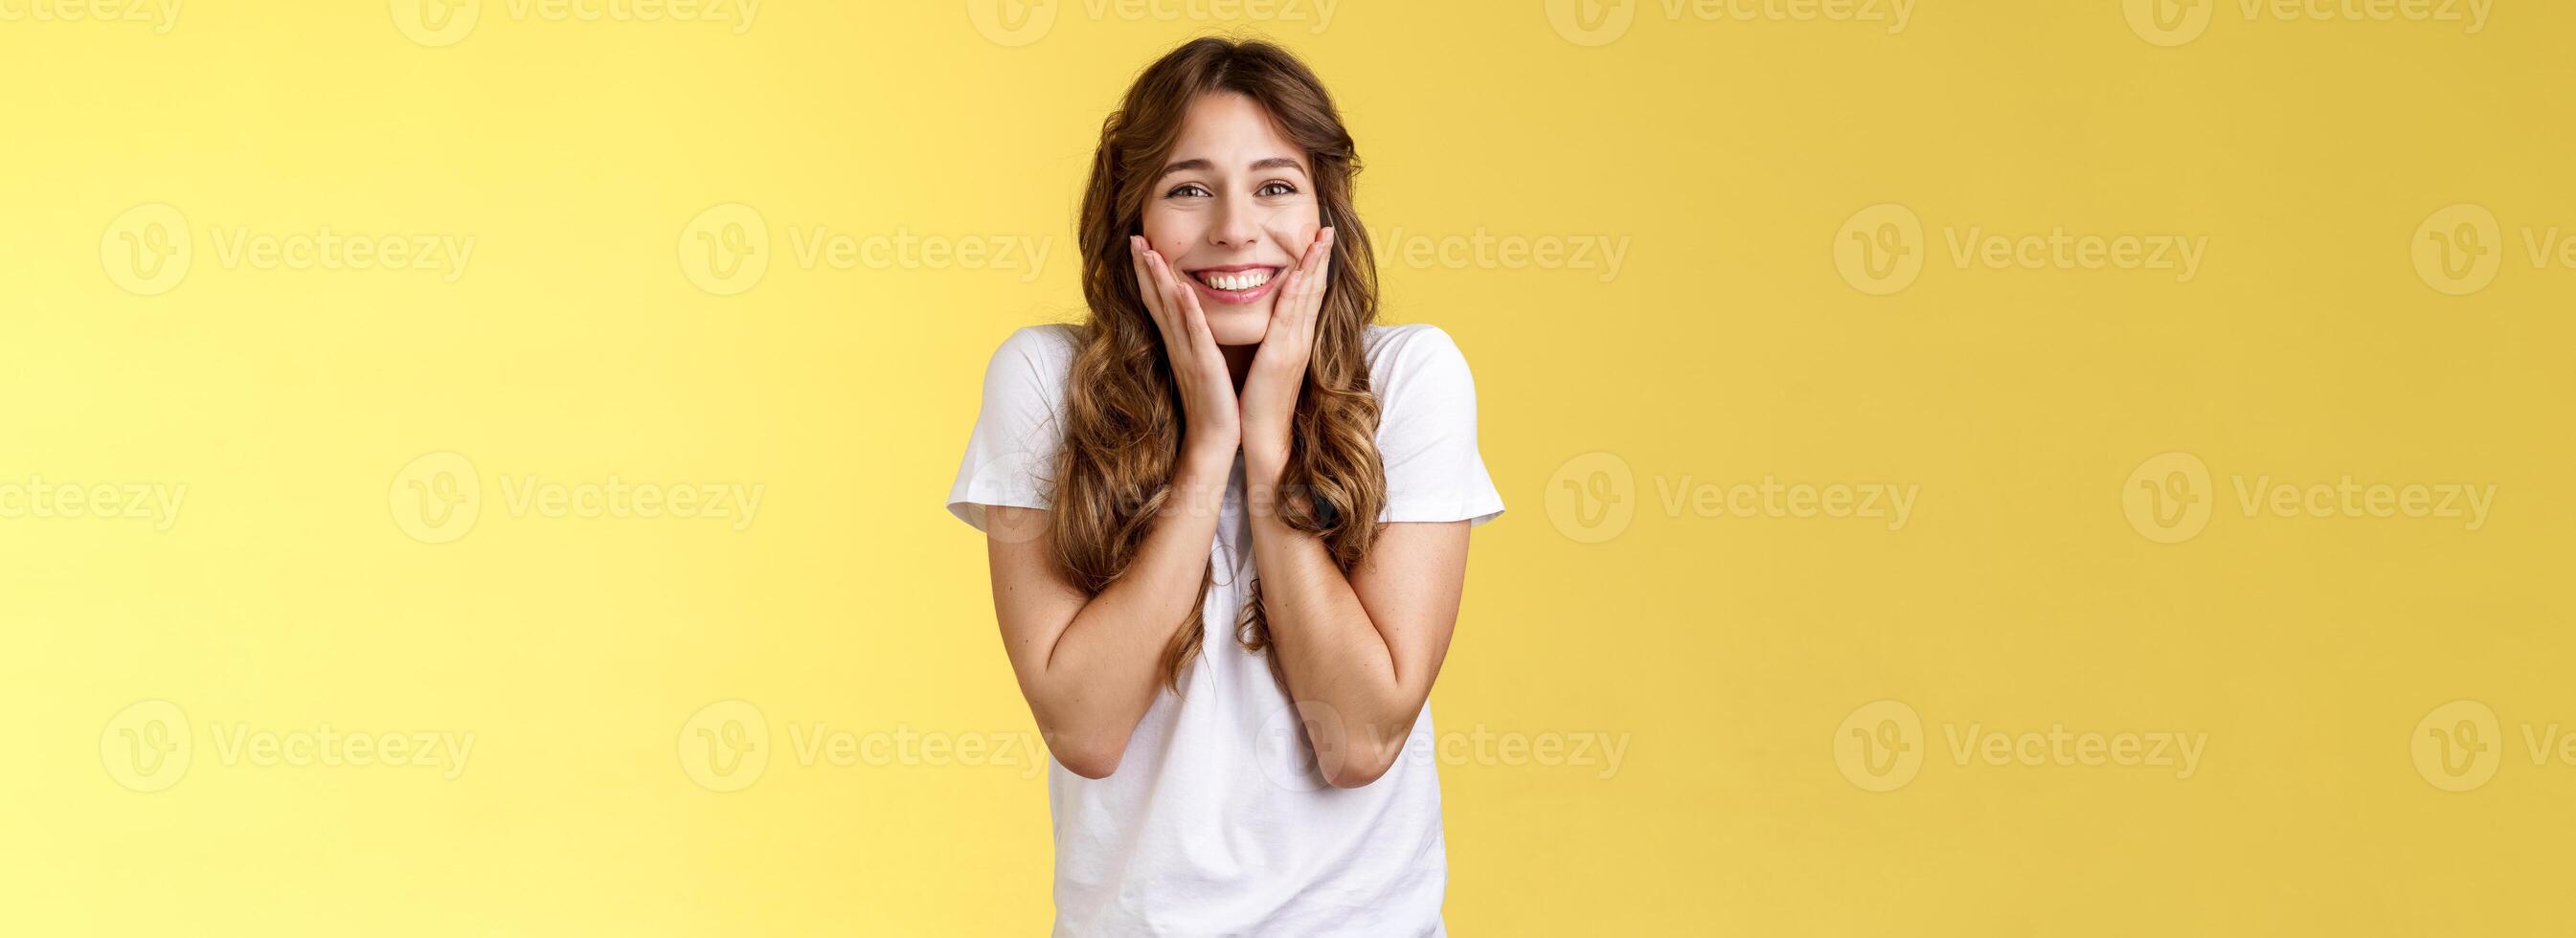 vrolijk gelukkig vrolijk jong meisje te ontvangen ongelooflijk kans studie Buitenland leerling juichen vieren verbijsterend nieuws tintje wangen blozen vreugde geluk glimlachen breed geel achtergrond foto